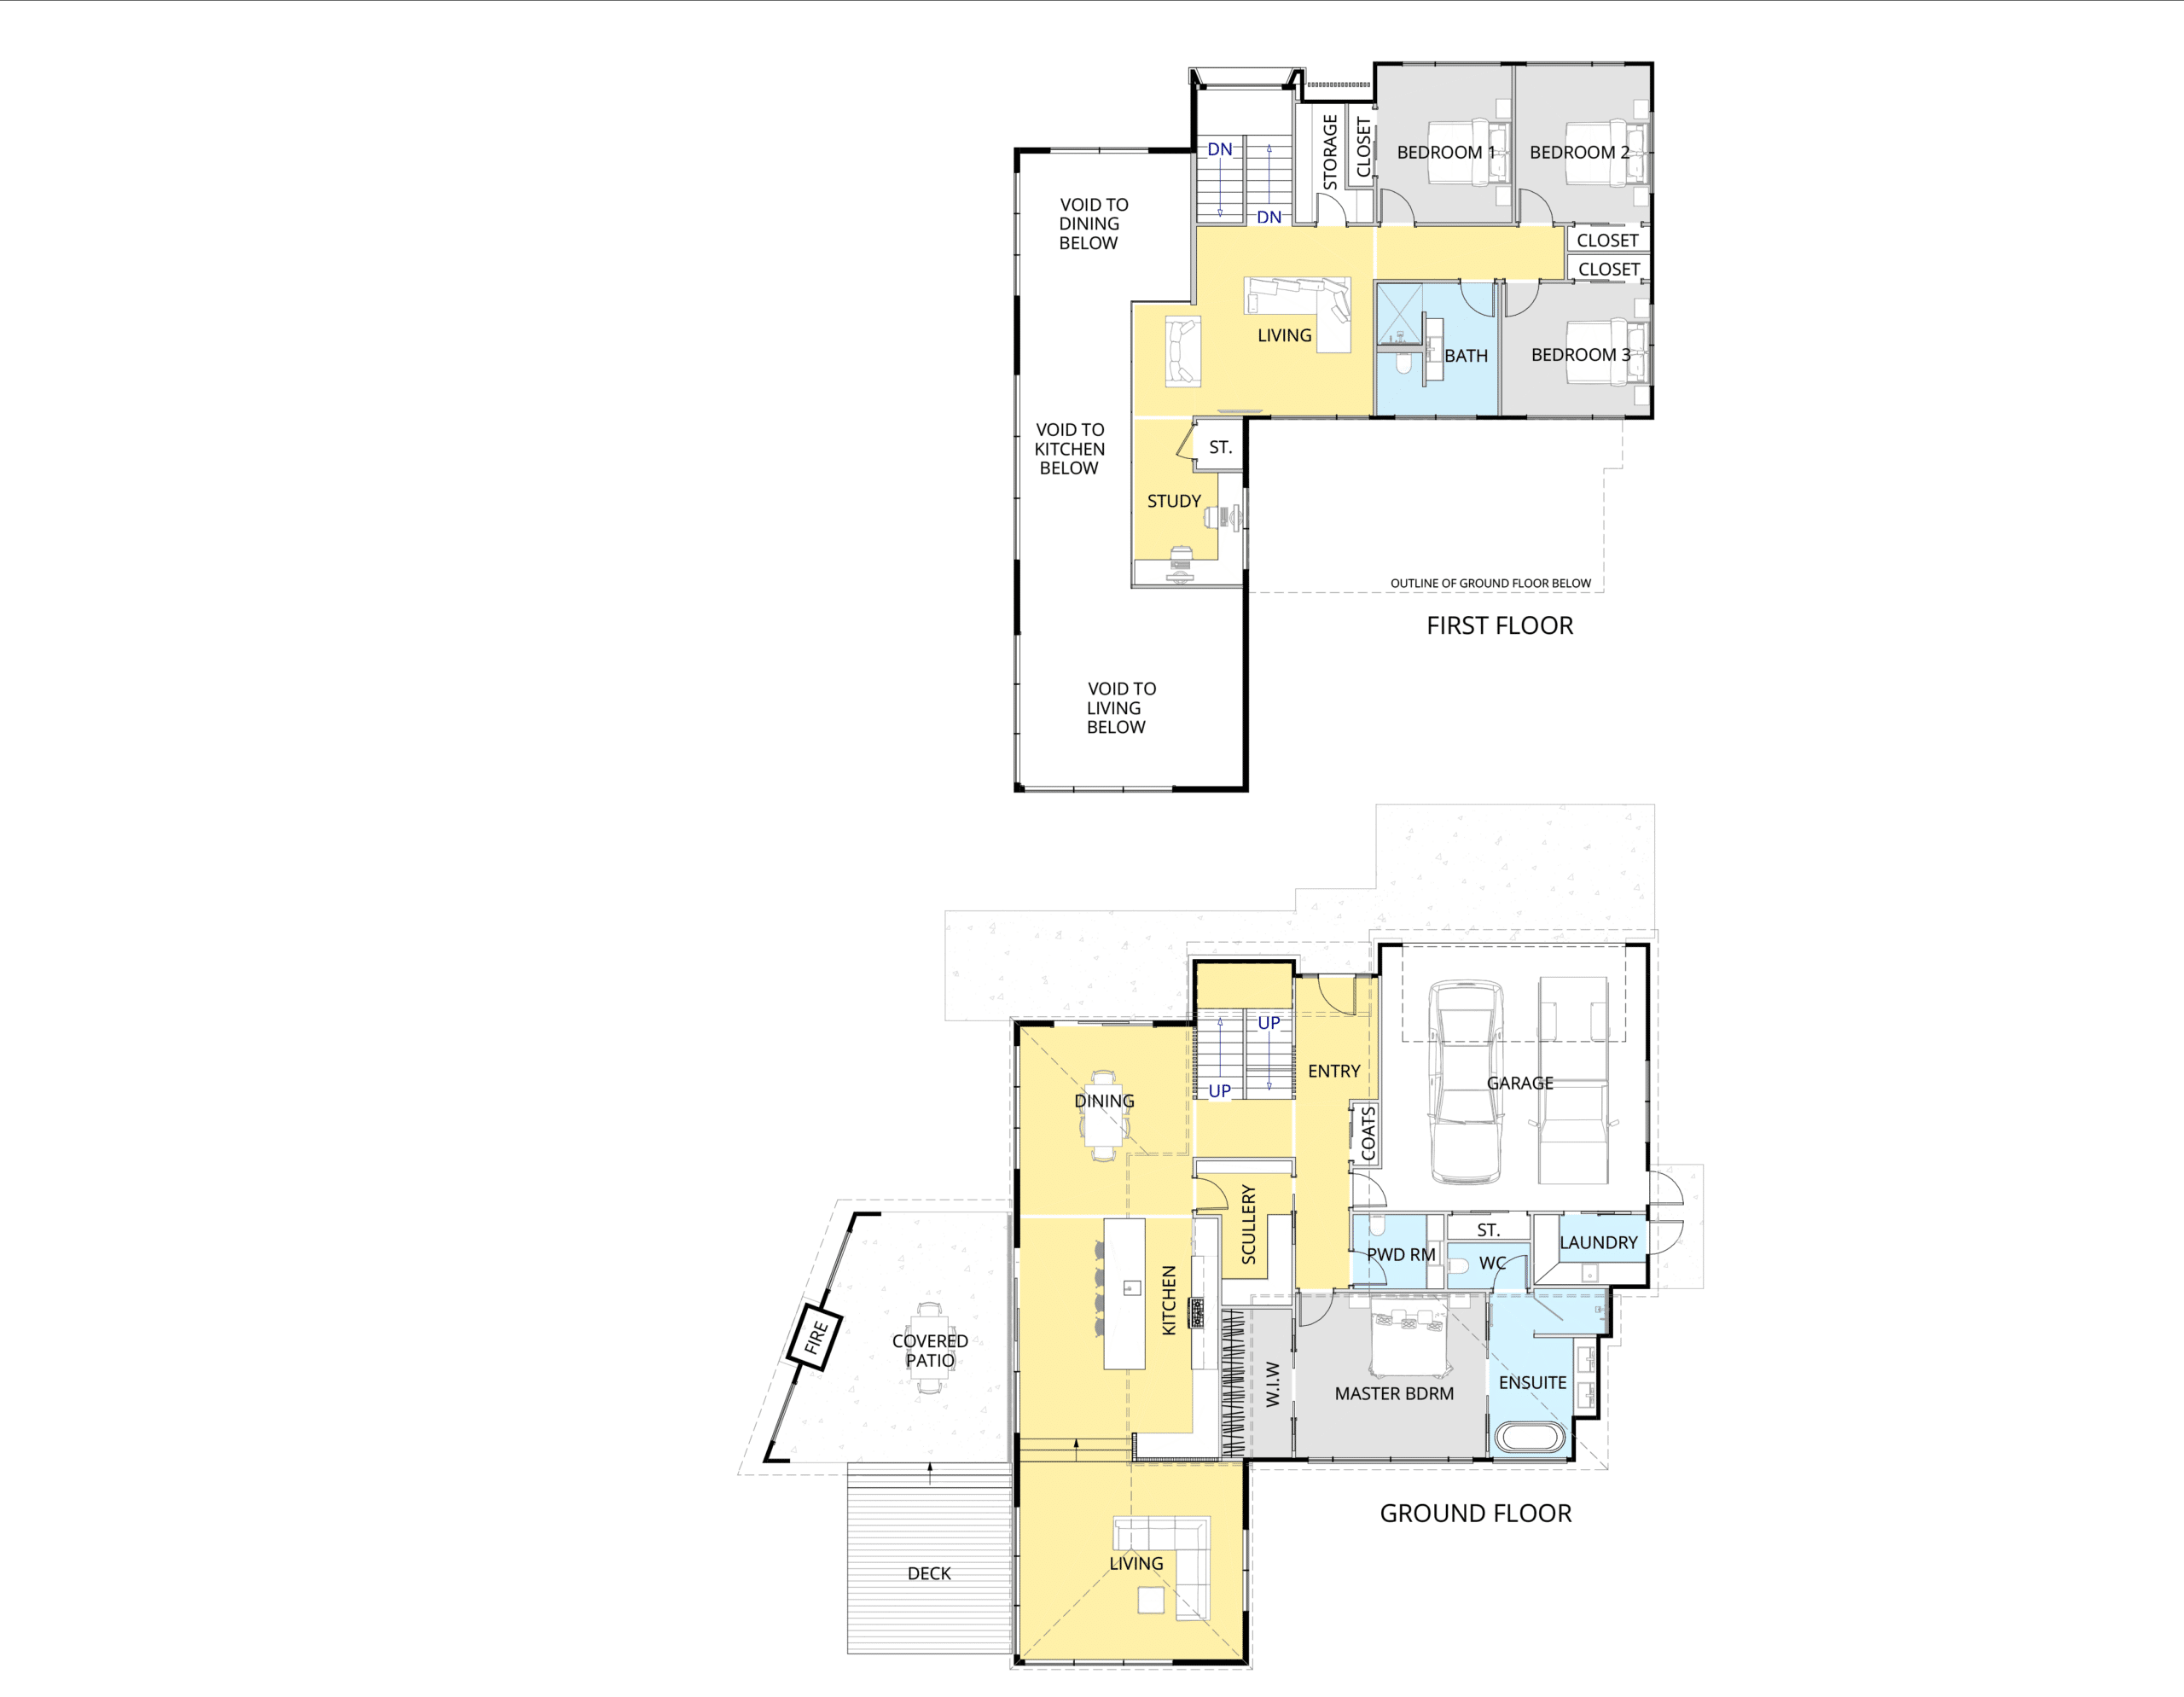 Waikato house floor plan